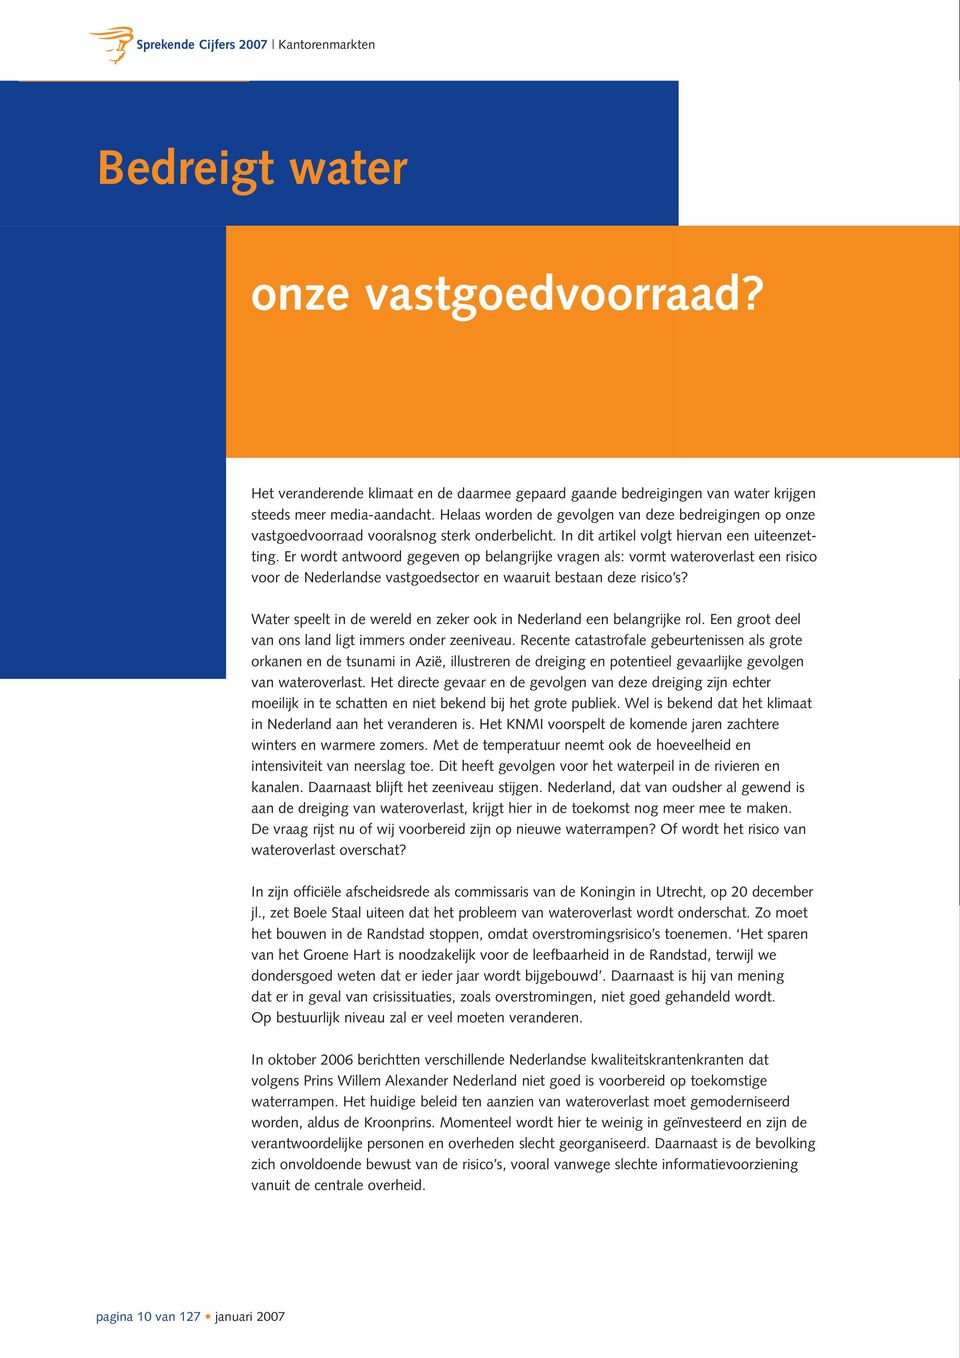 Er wordt antwoord gegeven op belangrijke vragen als: vormt wateroverlast een risico voor de Nederlandse vastgoedsector en waaruit bestaan deze risico s?